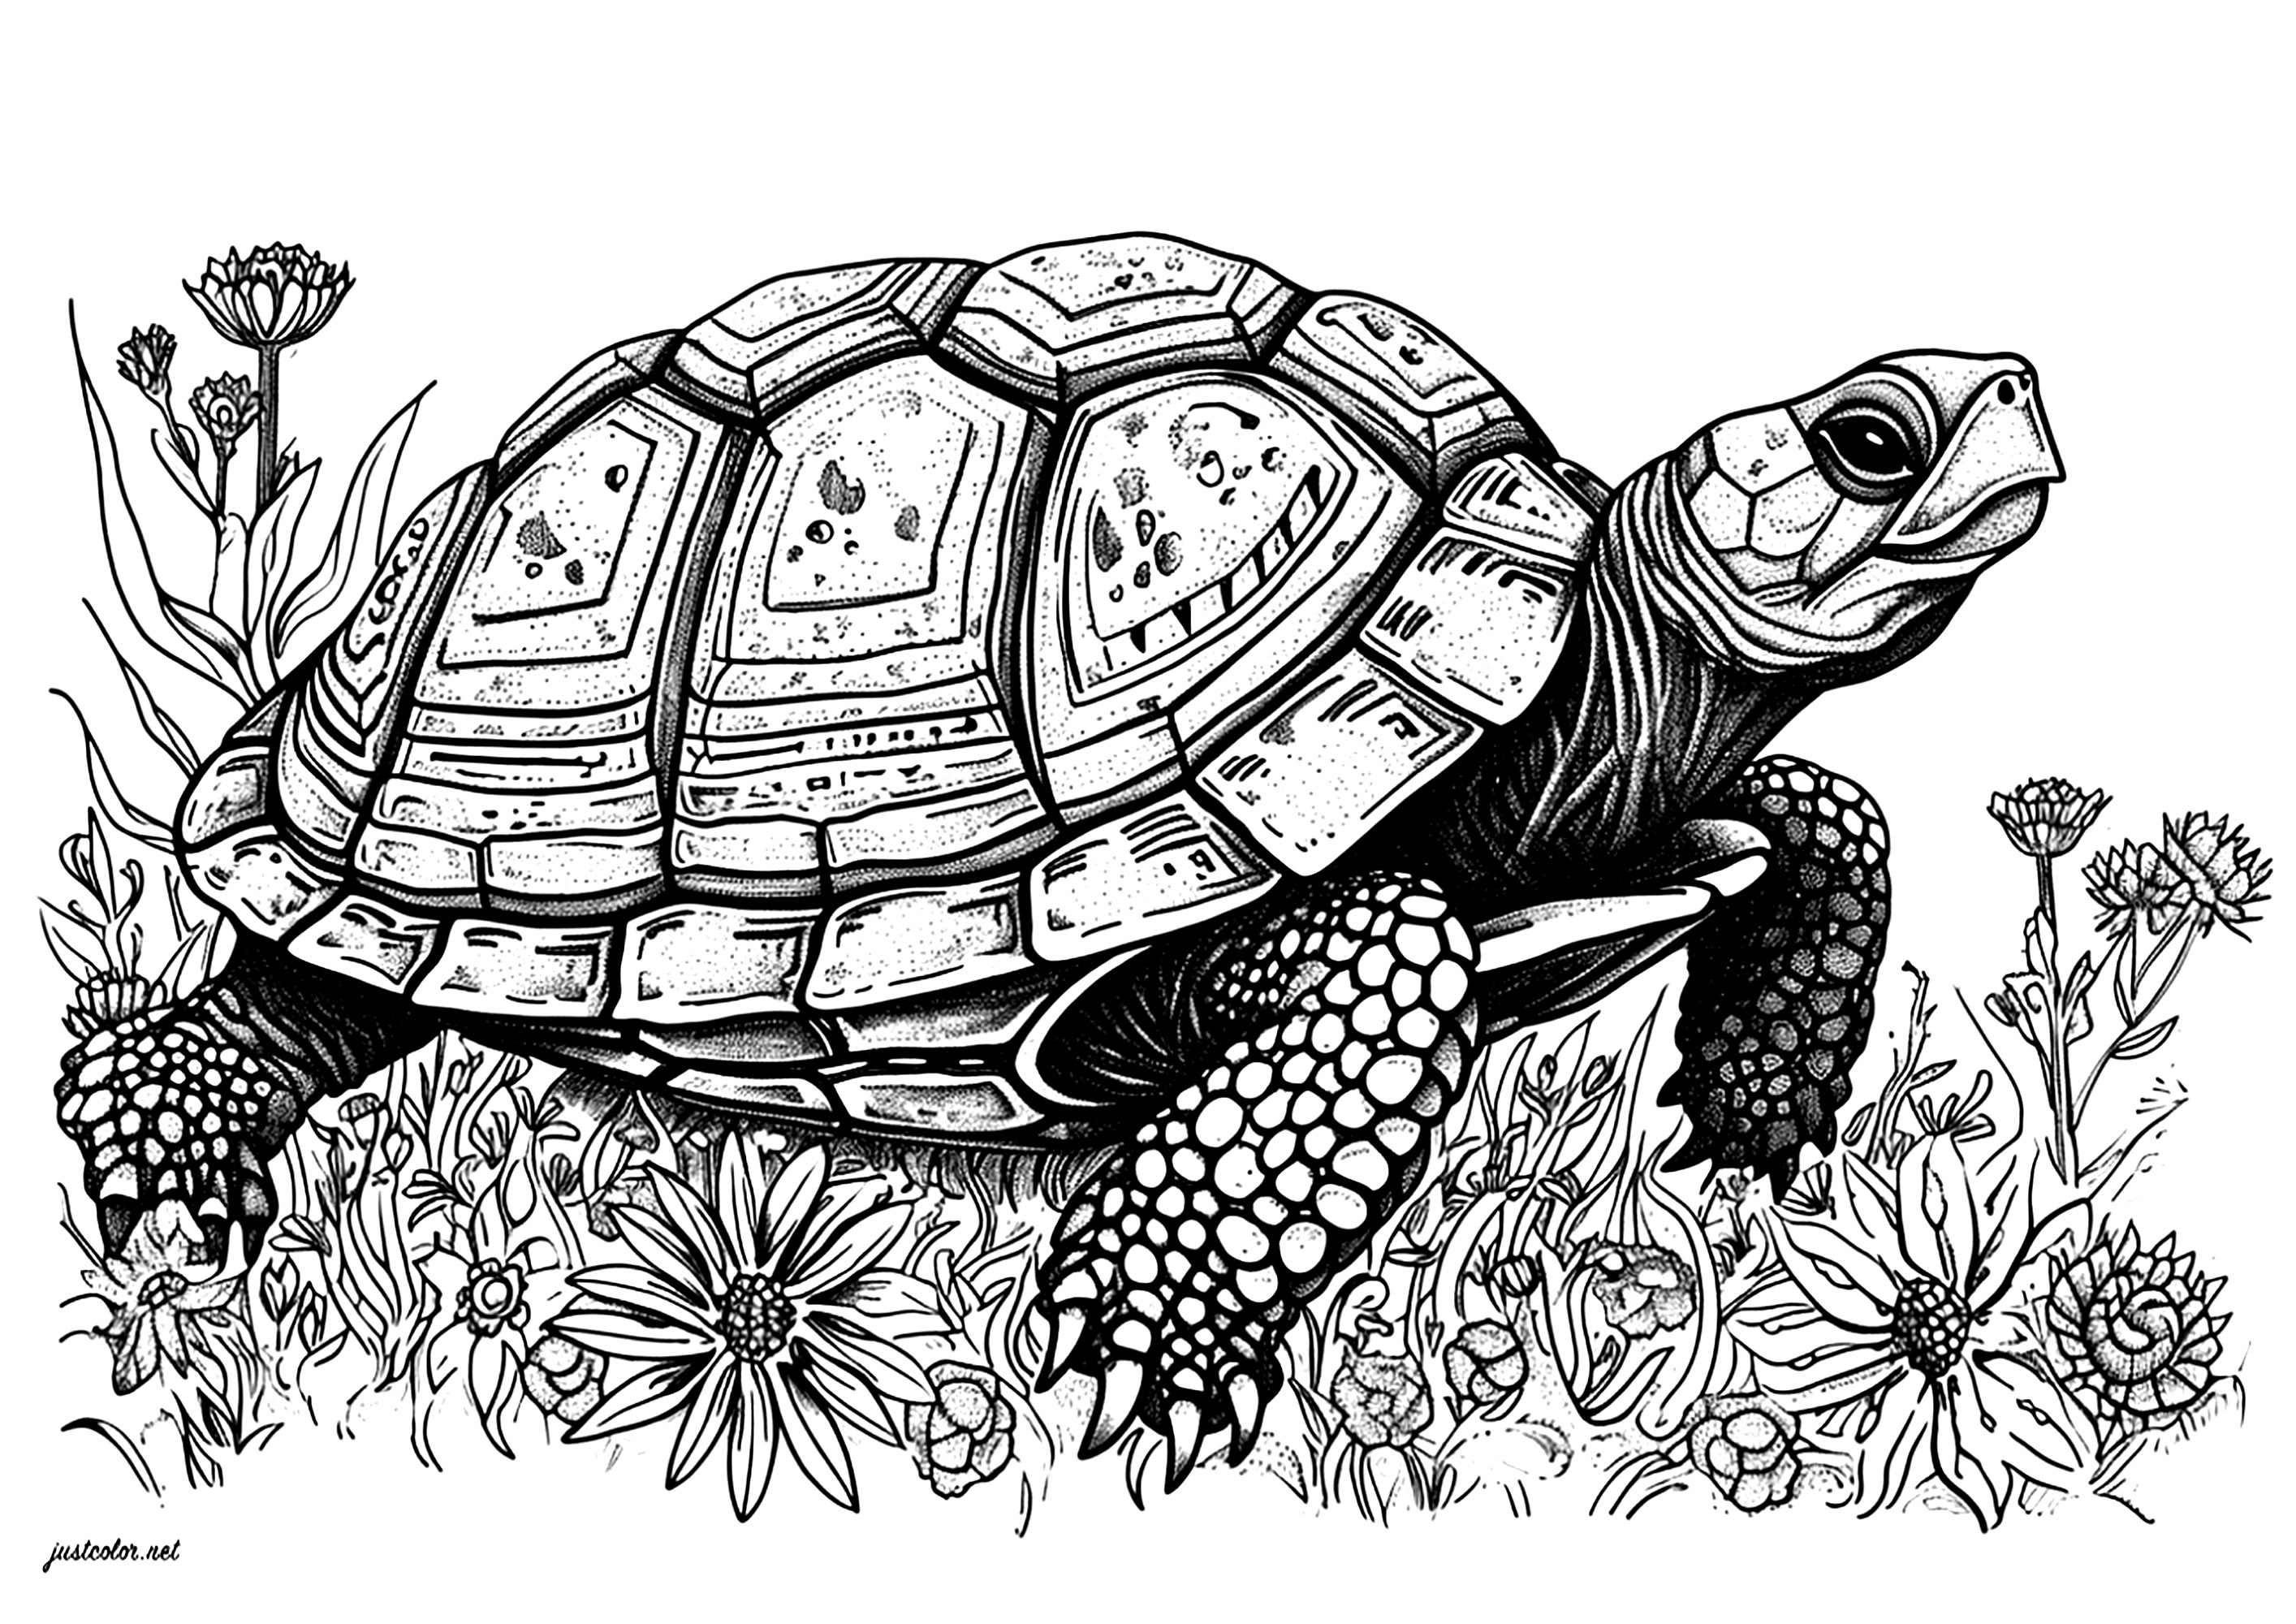 Una hermosa tortuga moviéndose lentamente entre bonitas flores